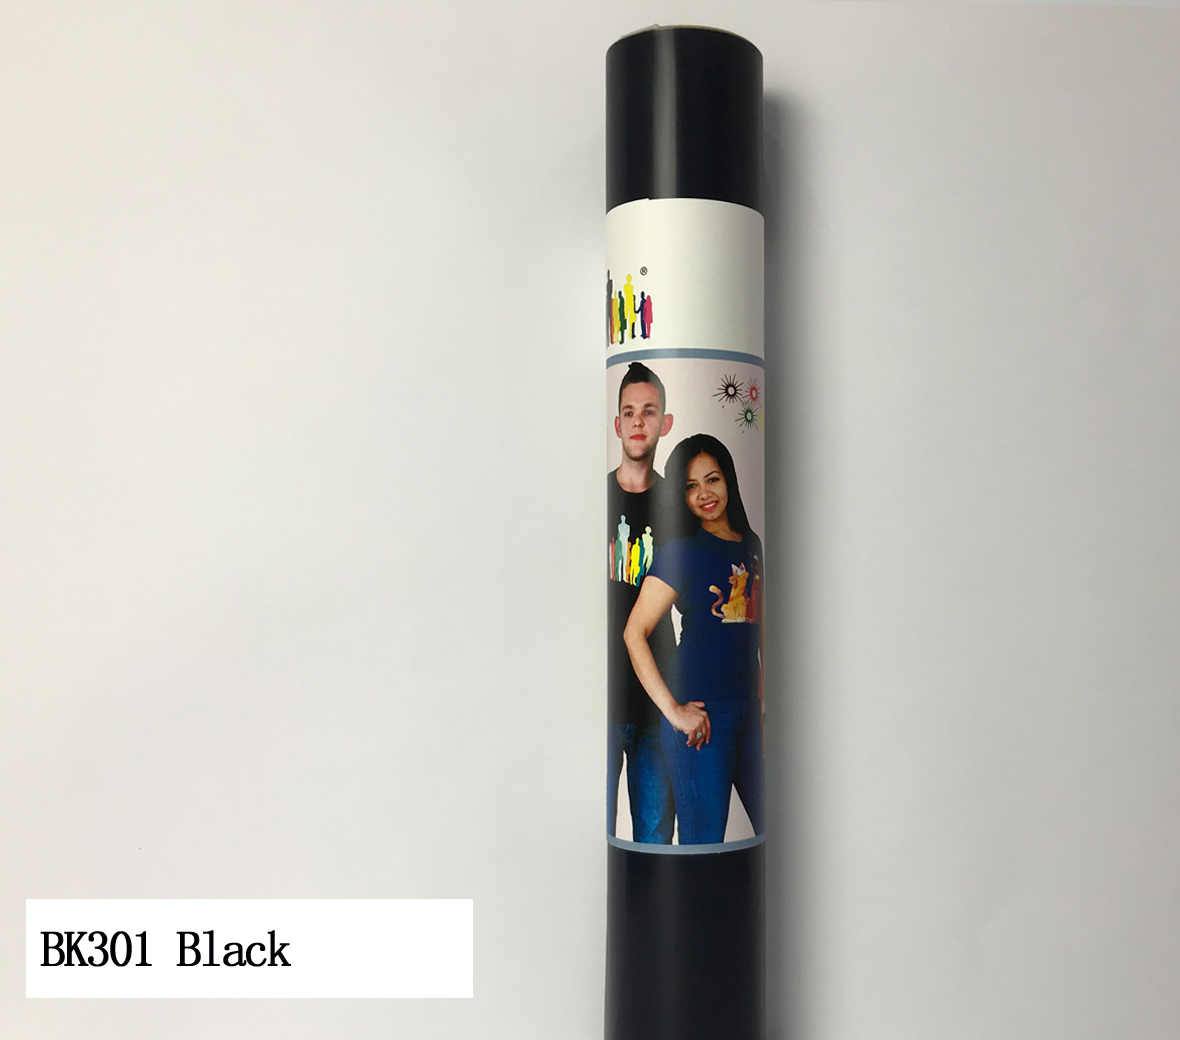 BK301 Black